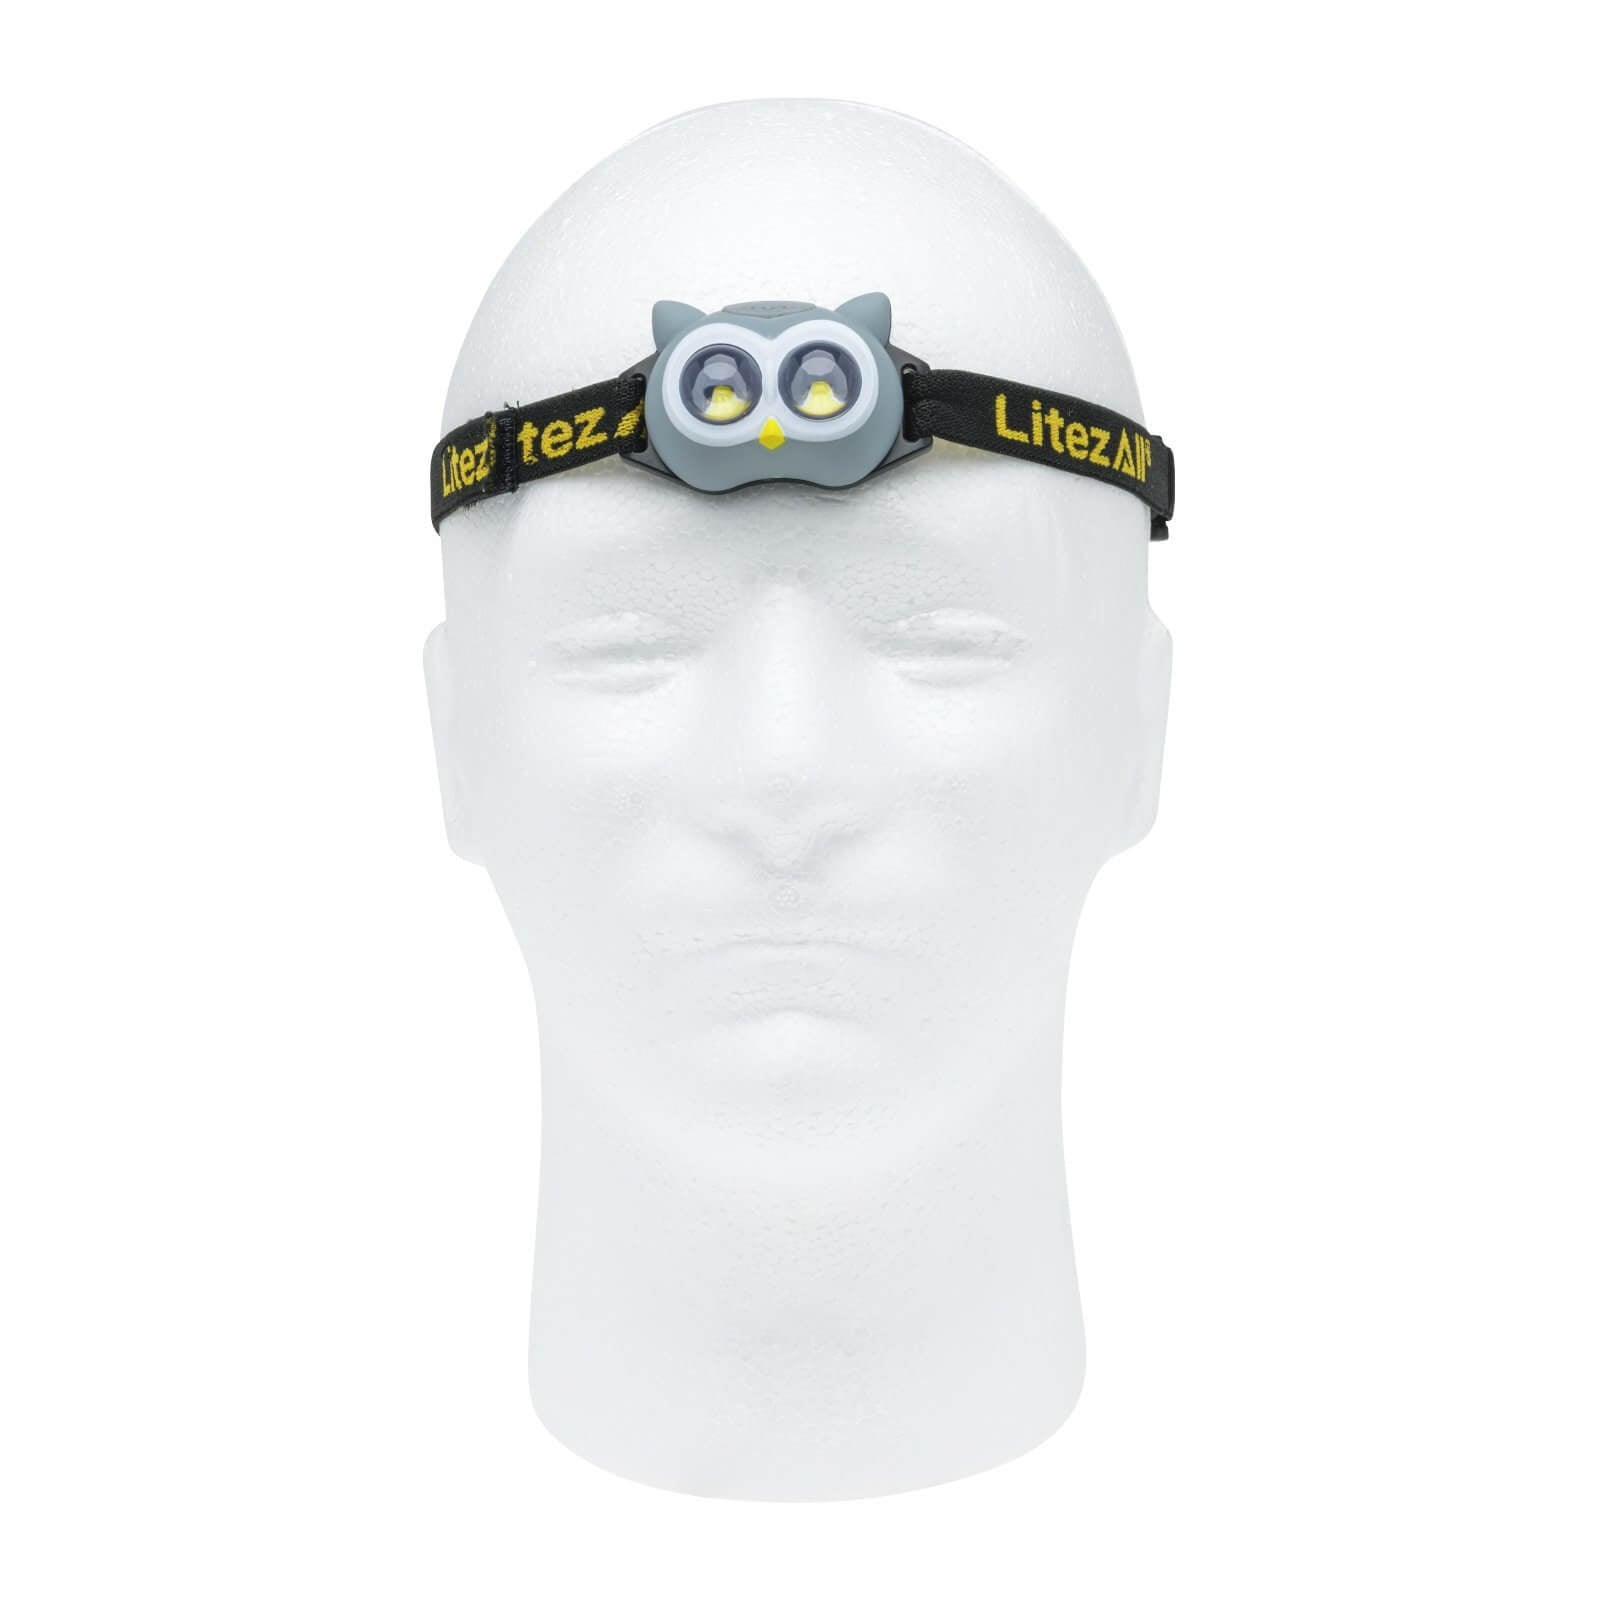 LitezAll Owl Themed Headlamp and Lantern Combo - LitezAll - Combo - 16